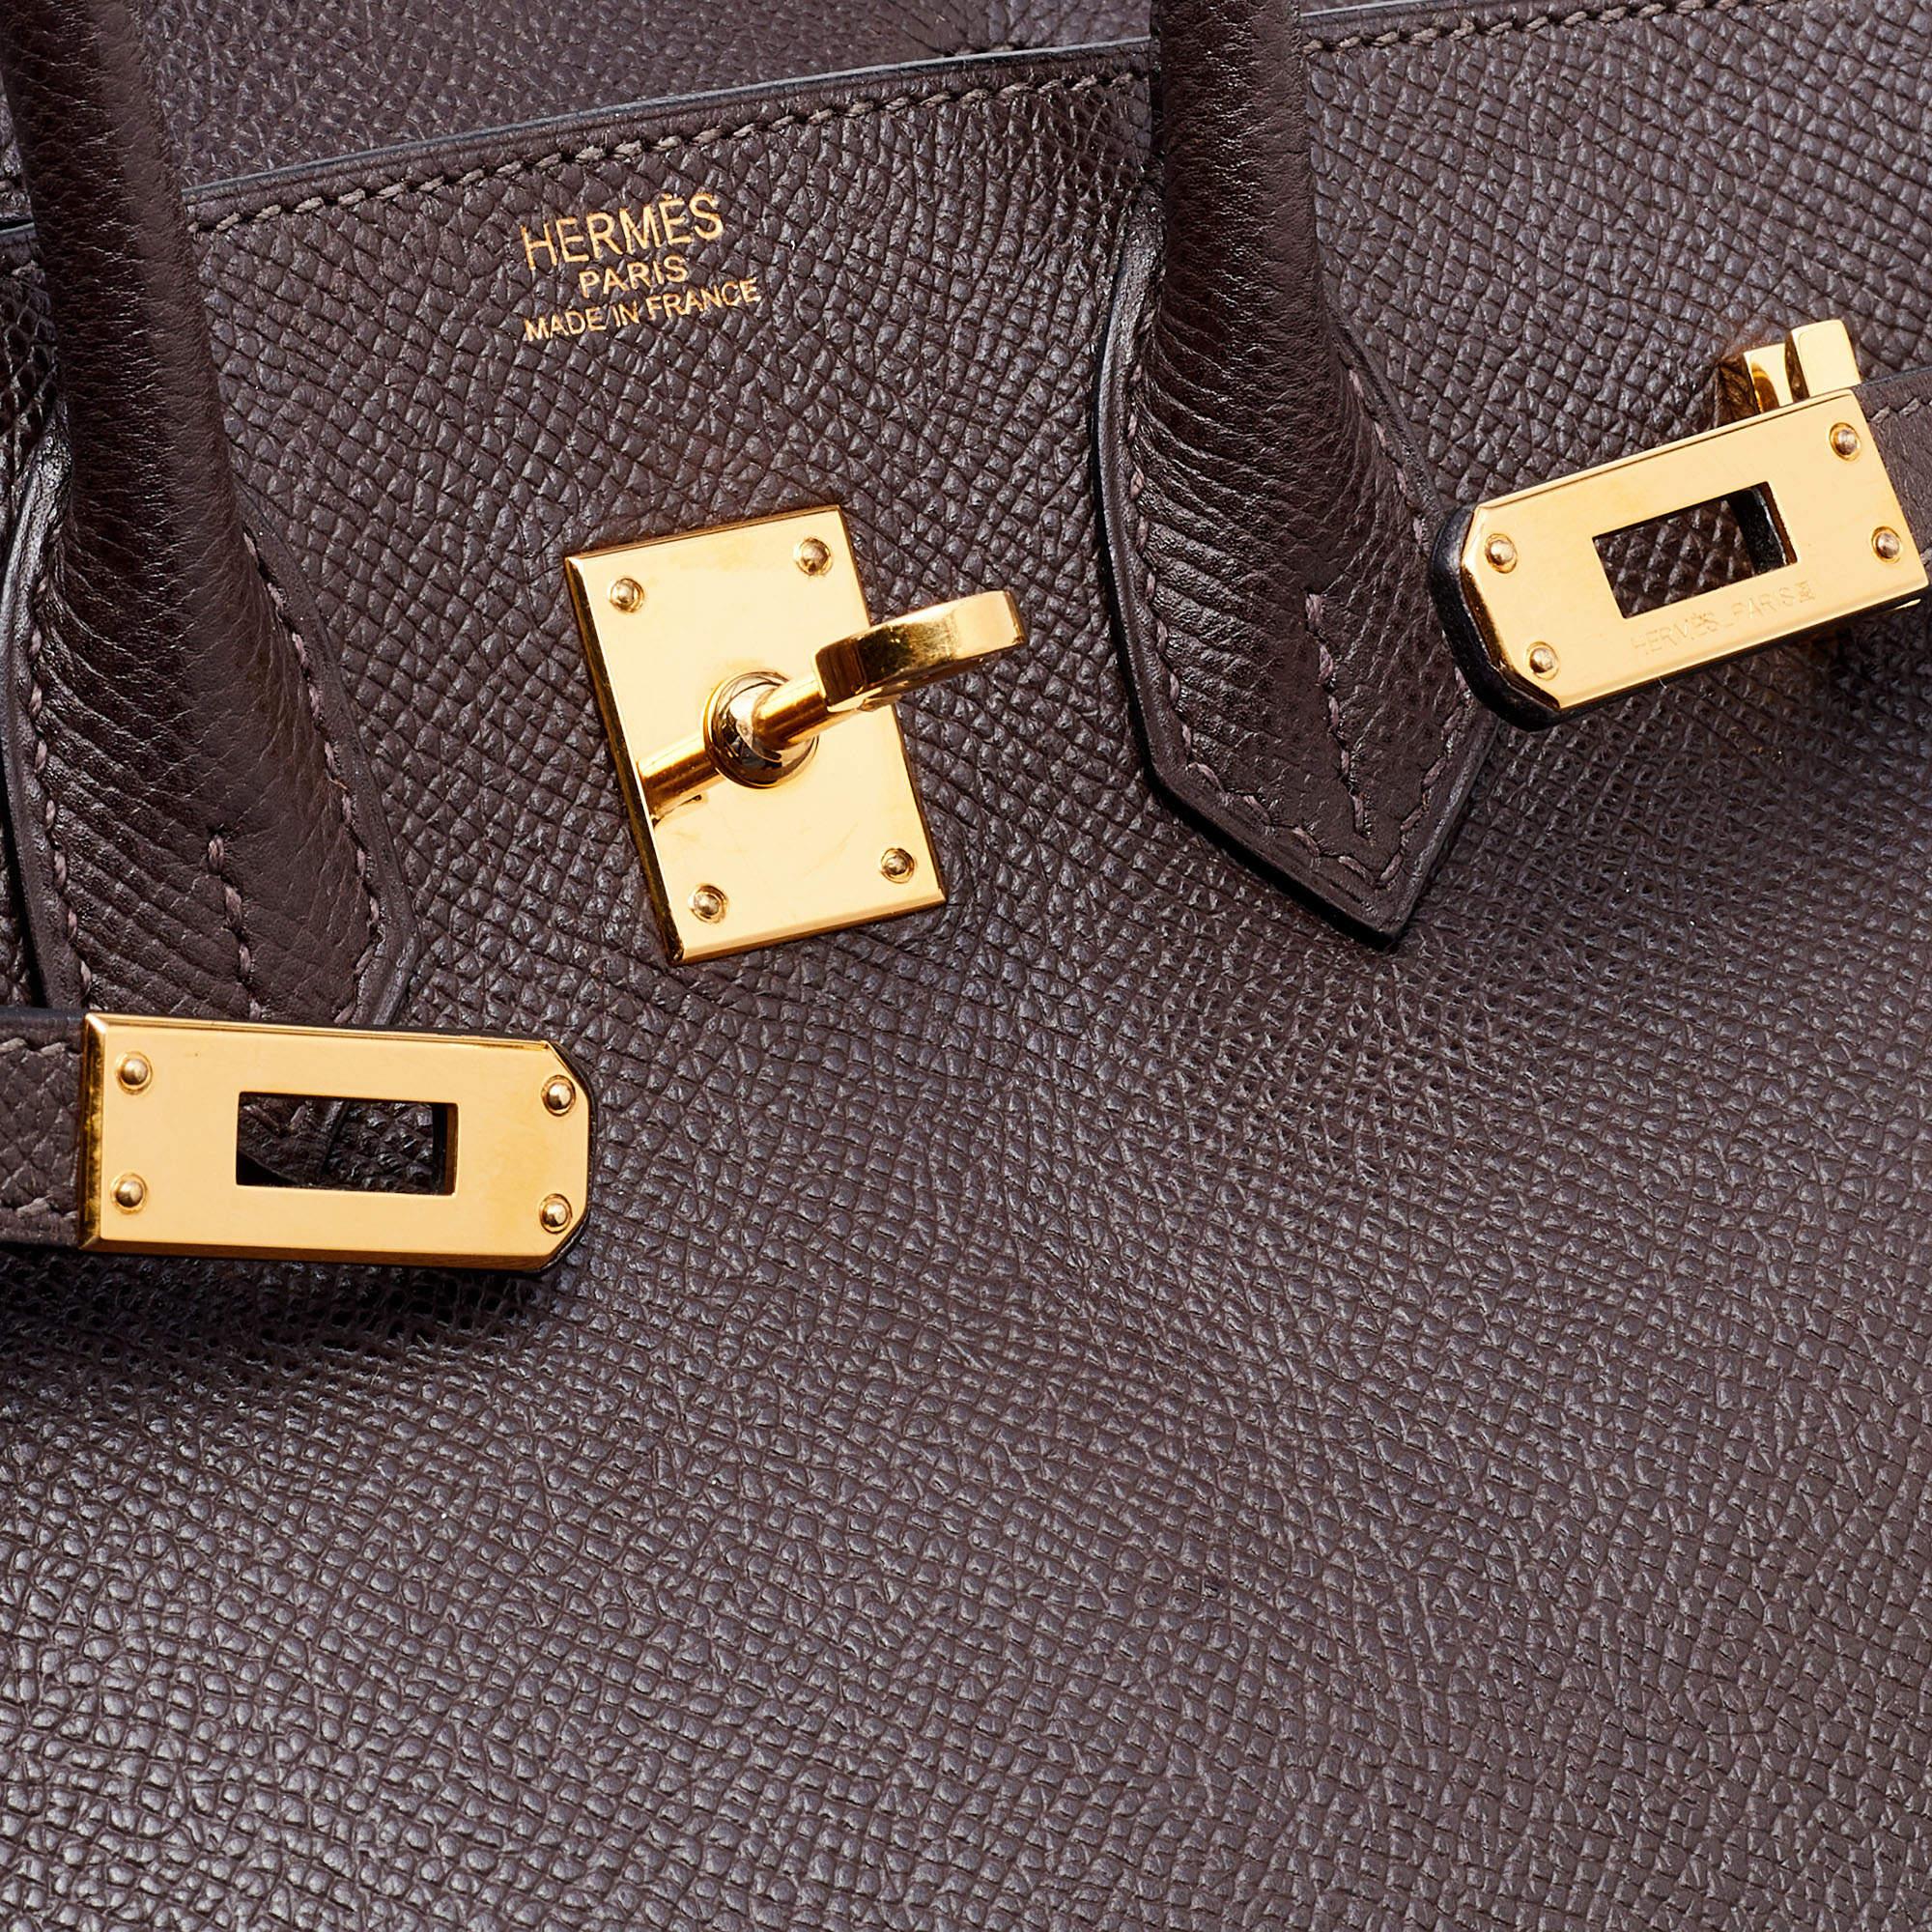  Hermès Sac Birkin 25 couleur chocolat en cuir Epsom finition dorée Pour femmes 